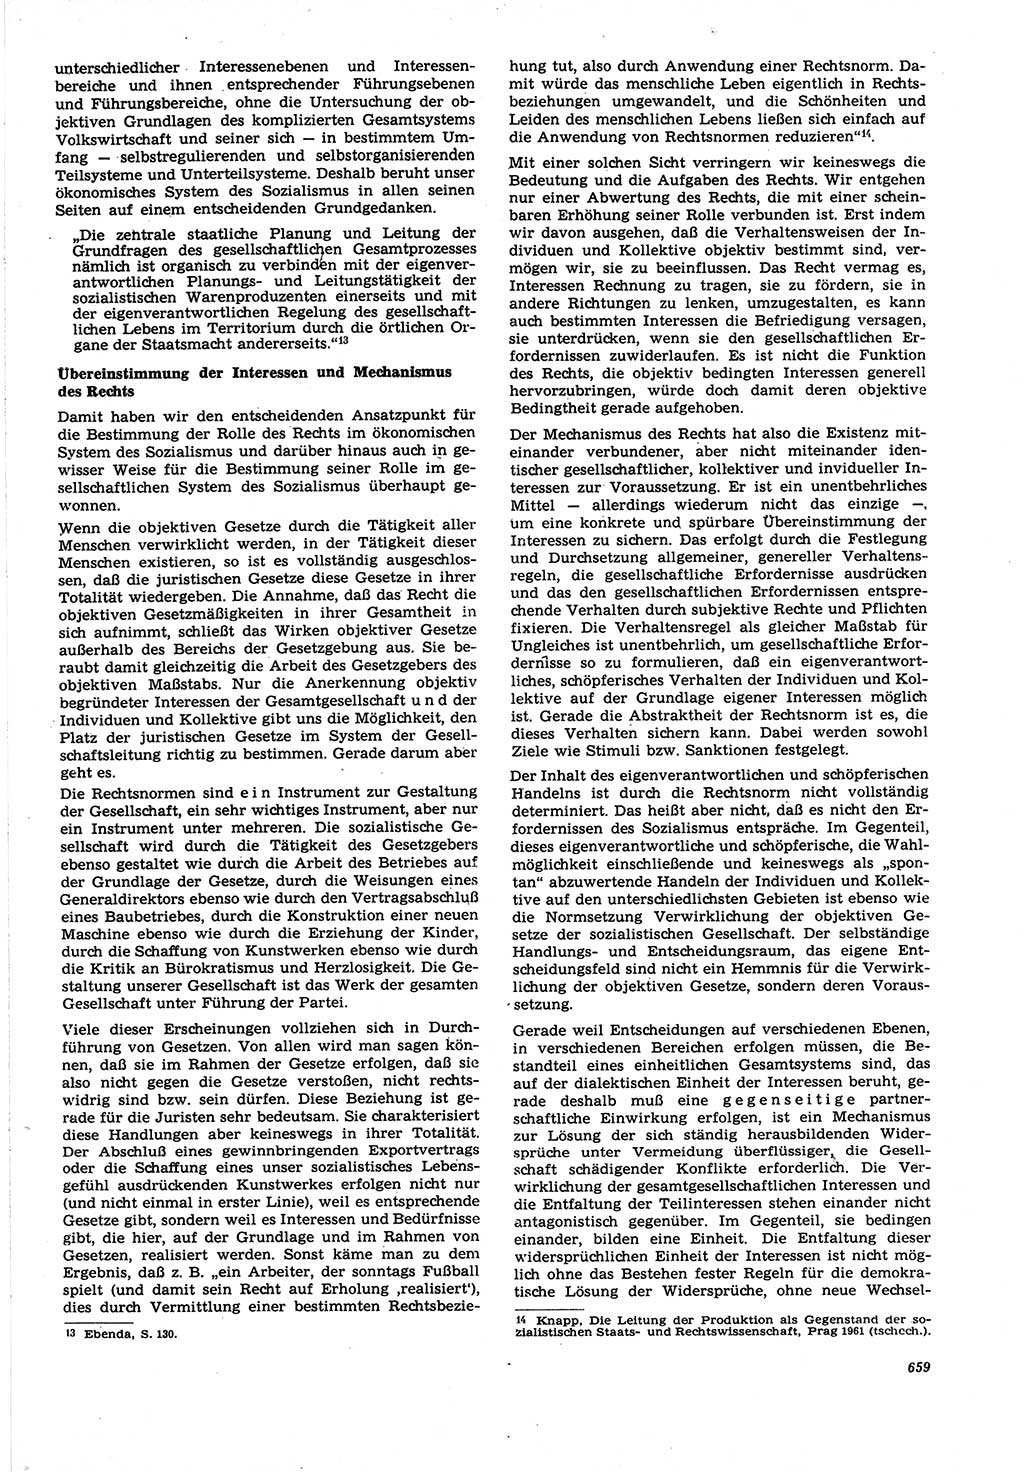 Neue Justiz (NJ), Zeitschrift für Recht und Rechtswissenschaft [Deutsche Demokratische Republik (DDR)], 21. Jahrgang 1967, Seite 659 (NJ DDR 1967, S. 659)